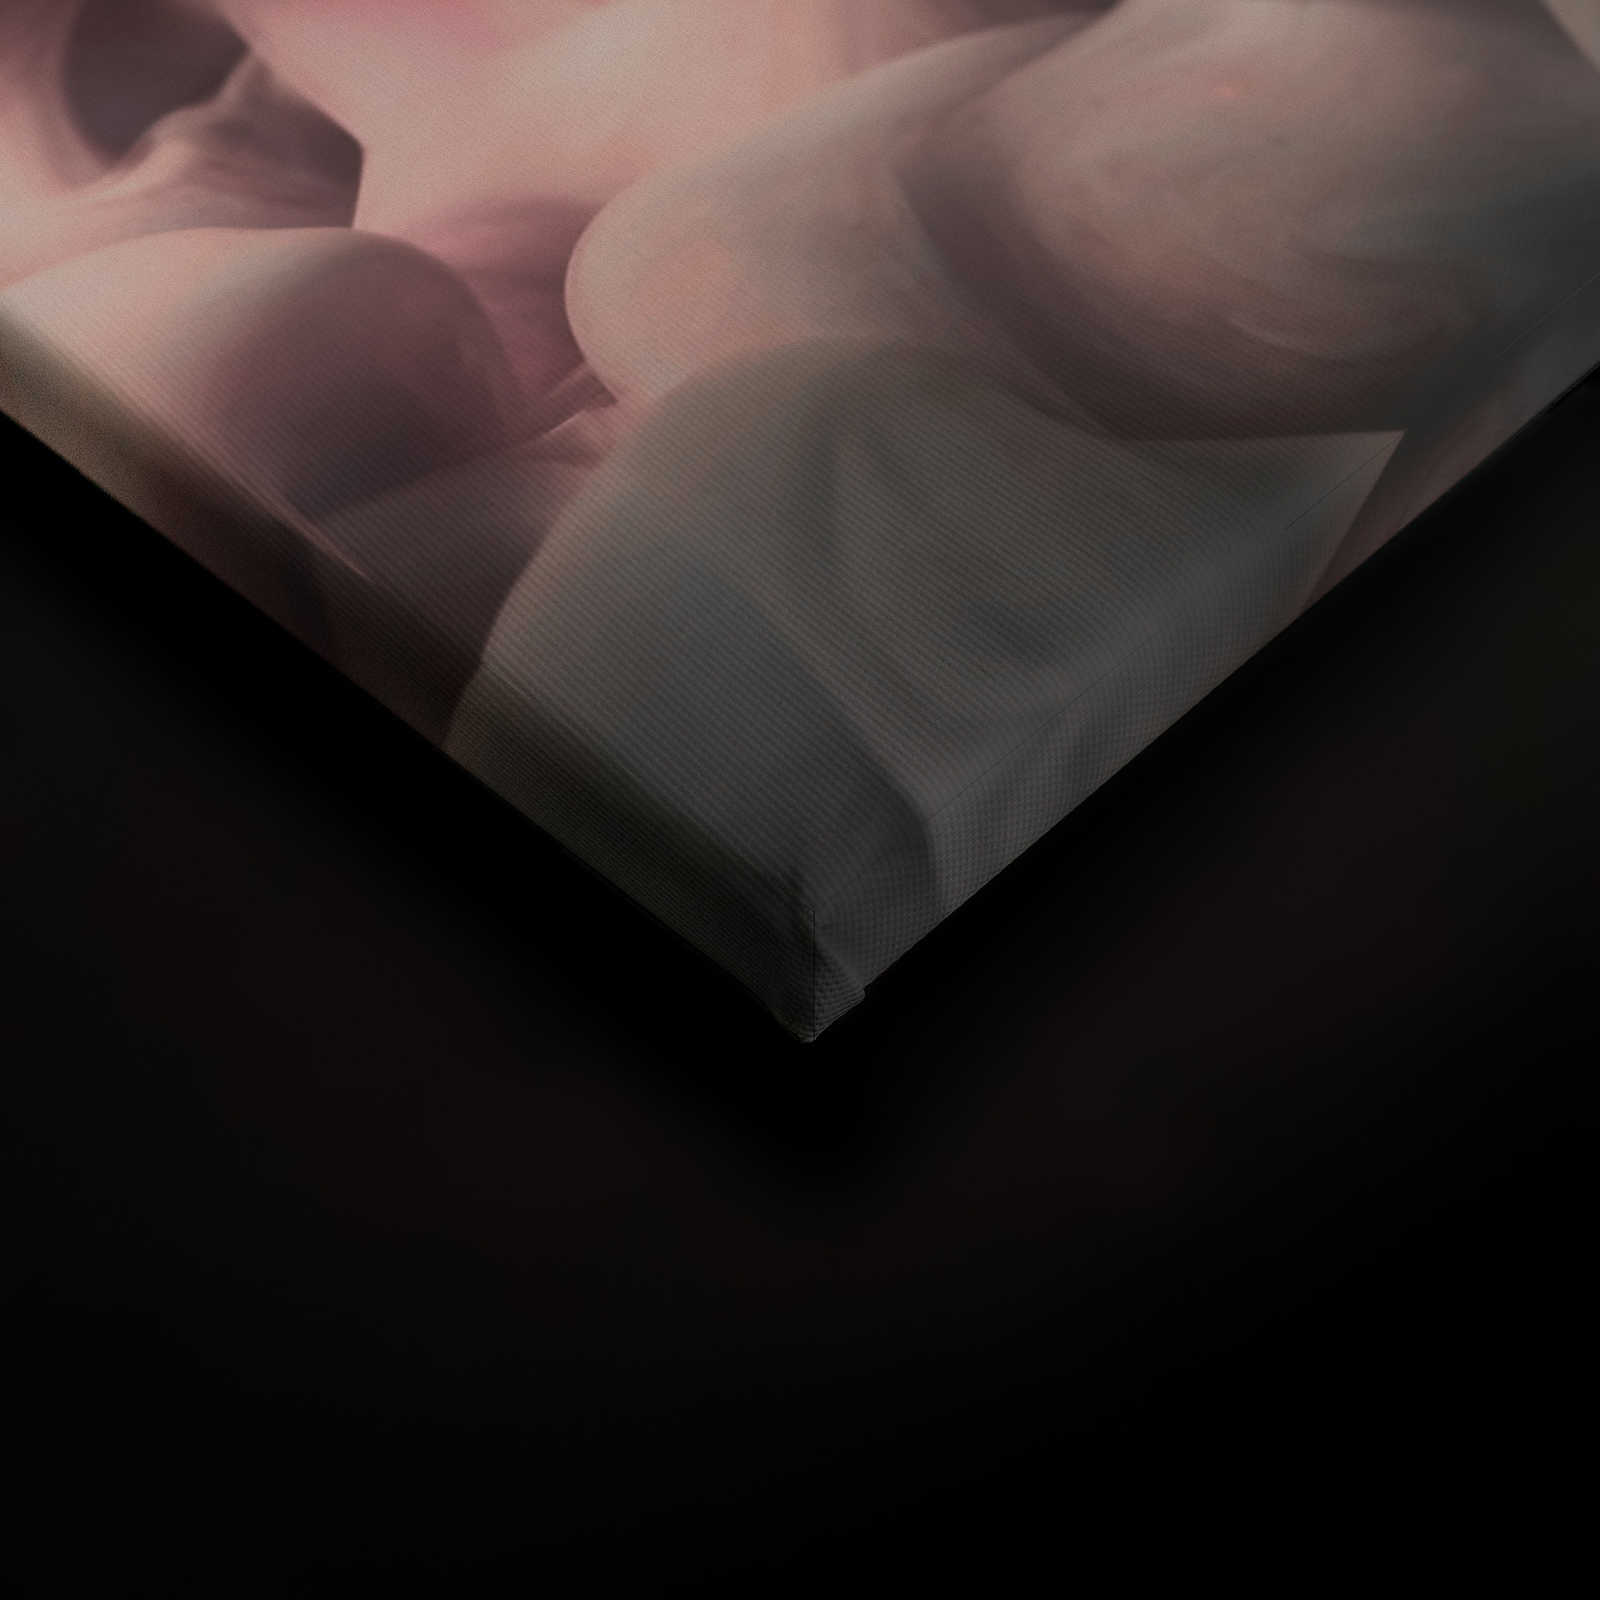             Gekleurd Rook Canvas | Roze, Grijs, Wit - 0.90 m x 0.60 m
        